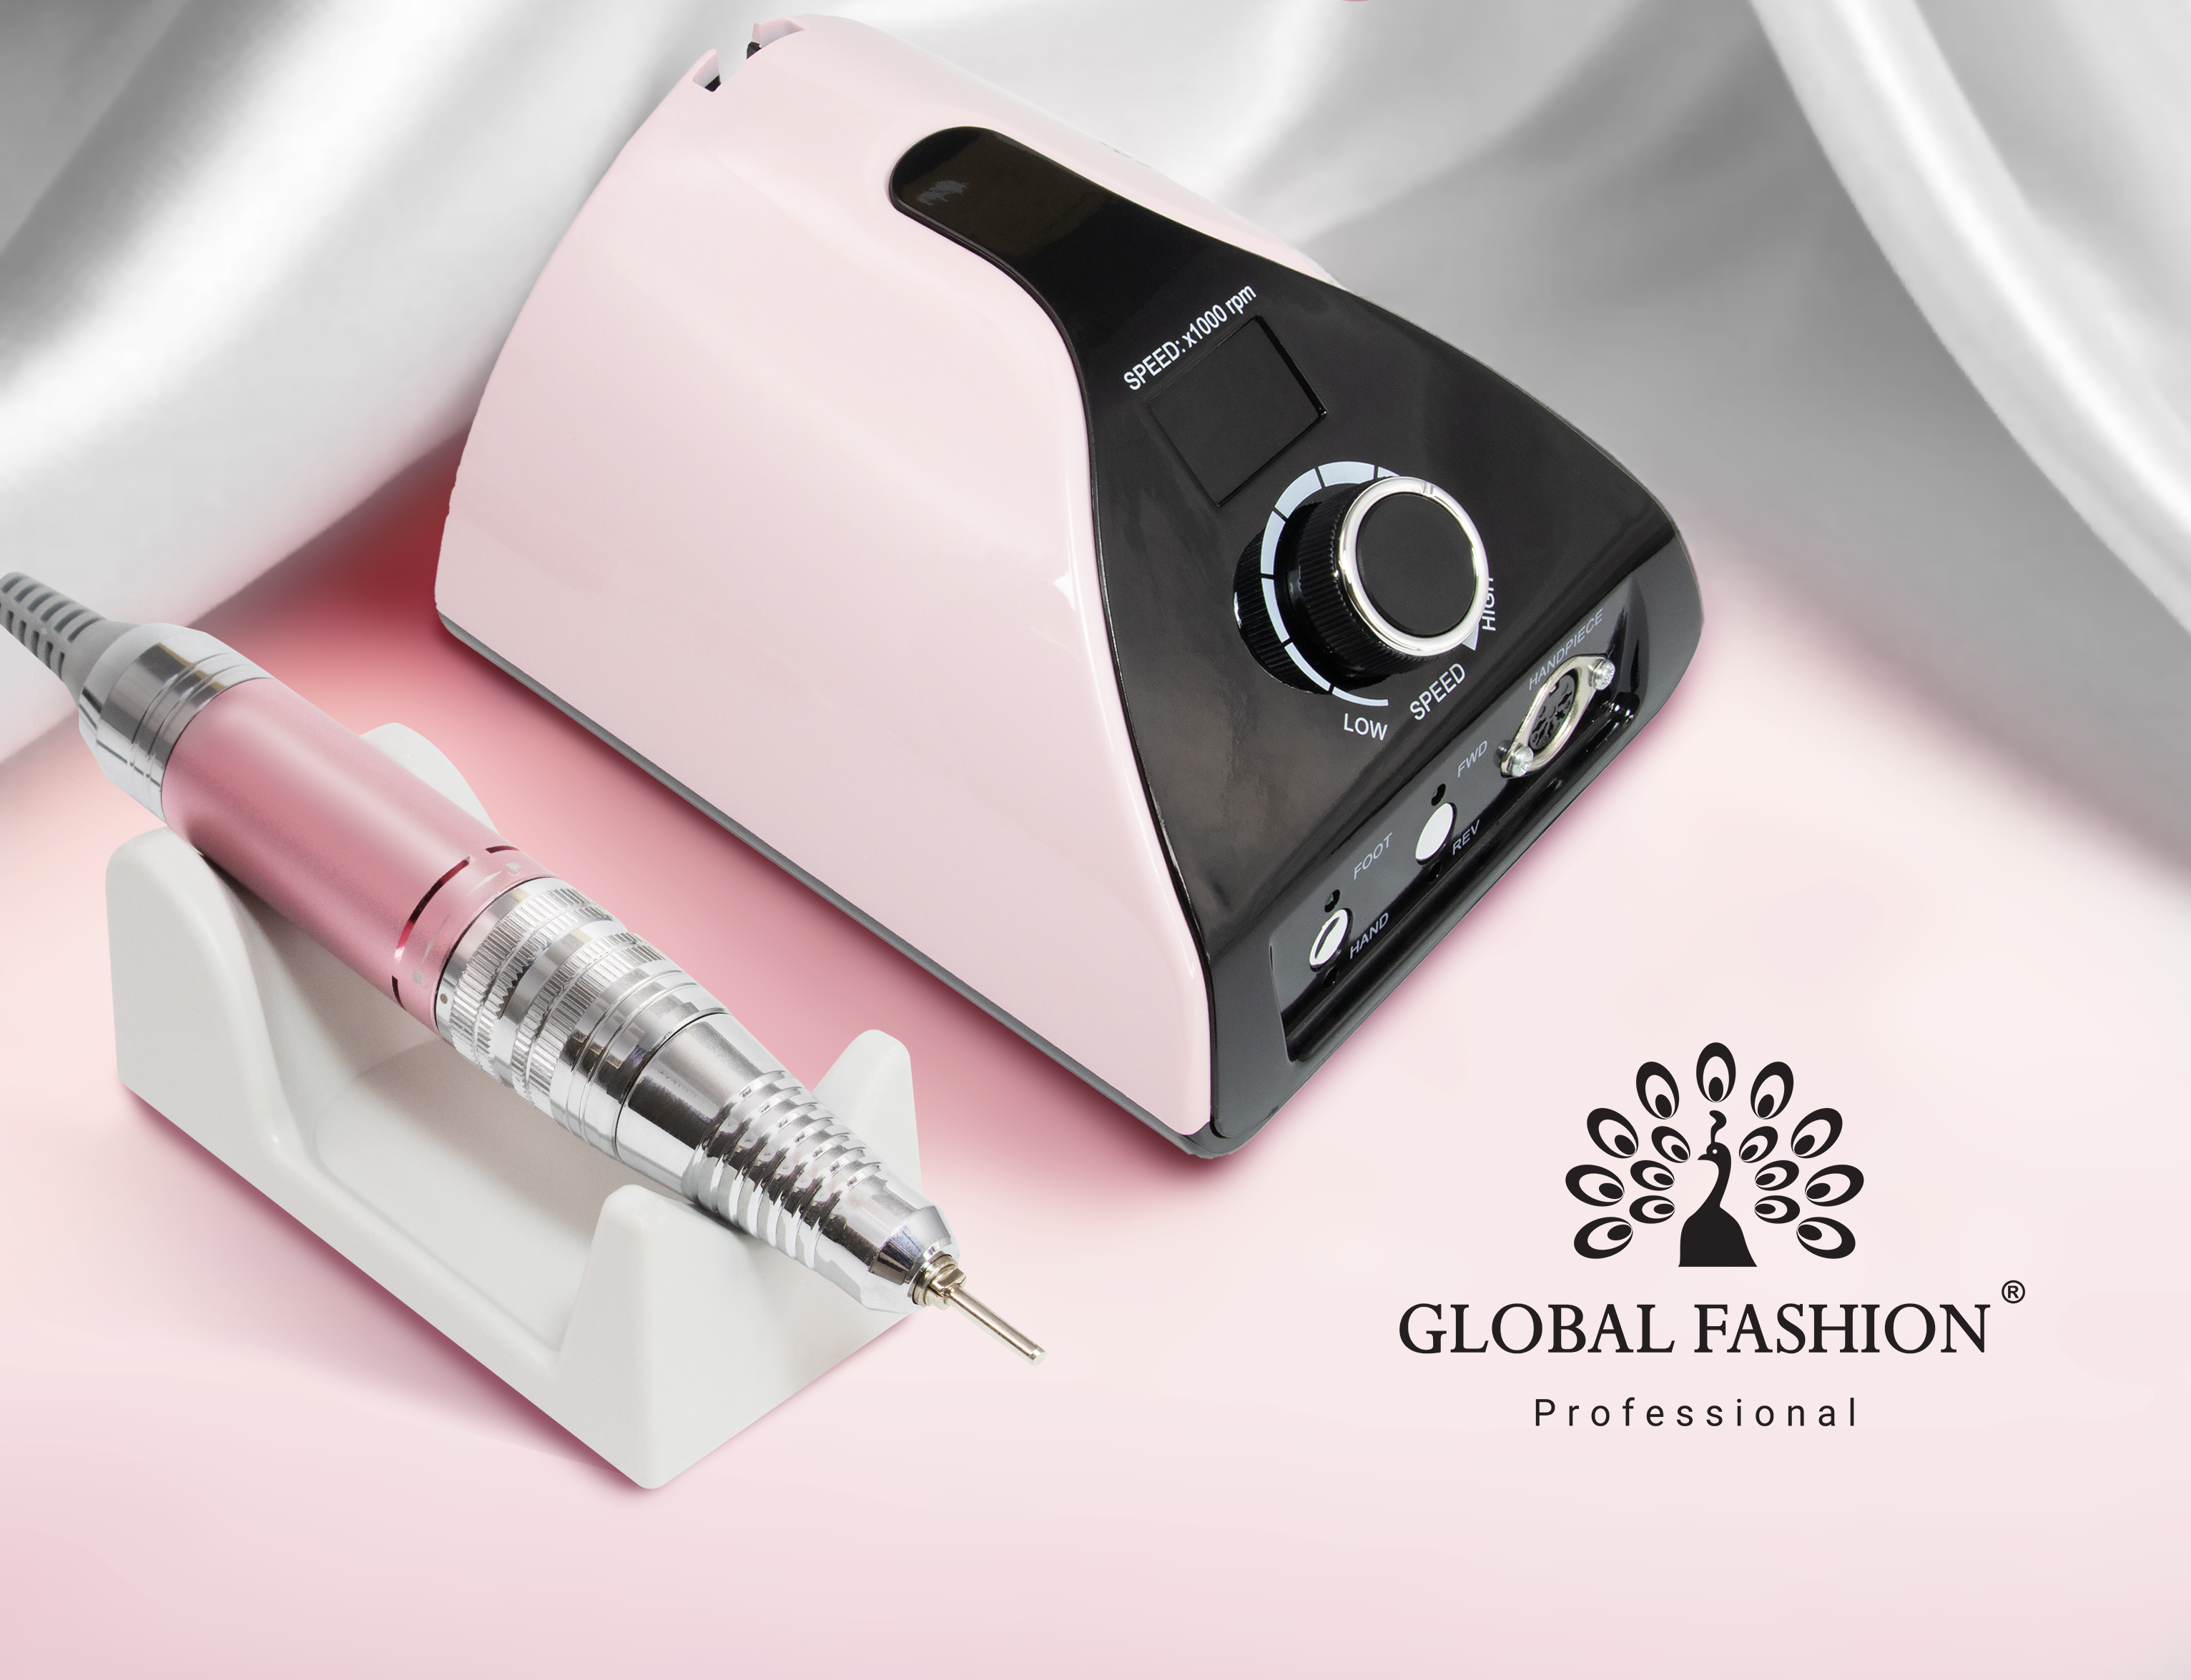 Pila electrica manichiura/pedichiura profesionala ZS-711 65W 35000 rpm: modelul de top de la Global Fashion